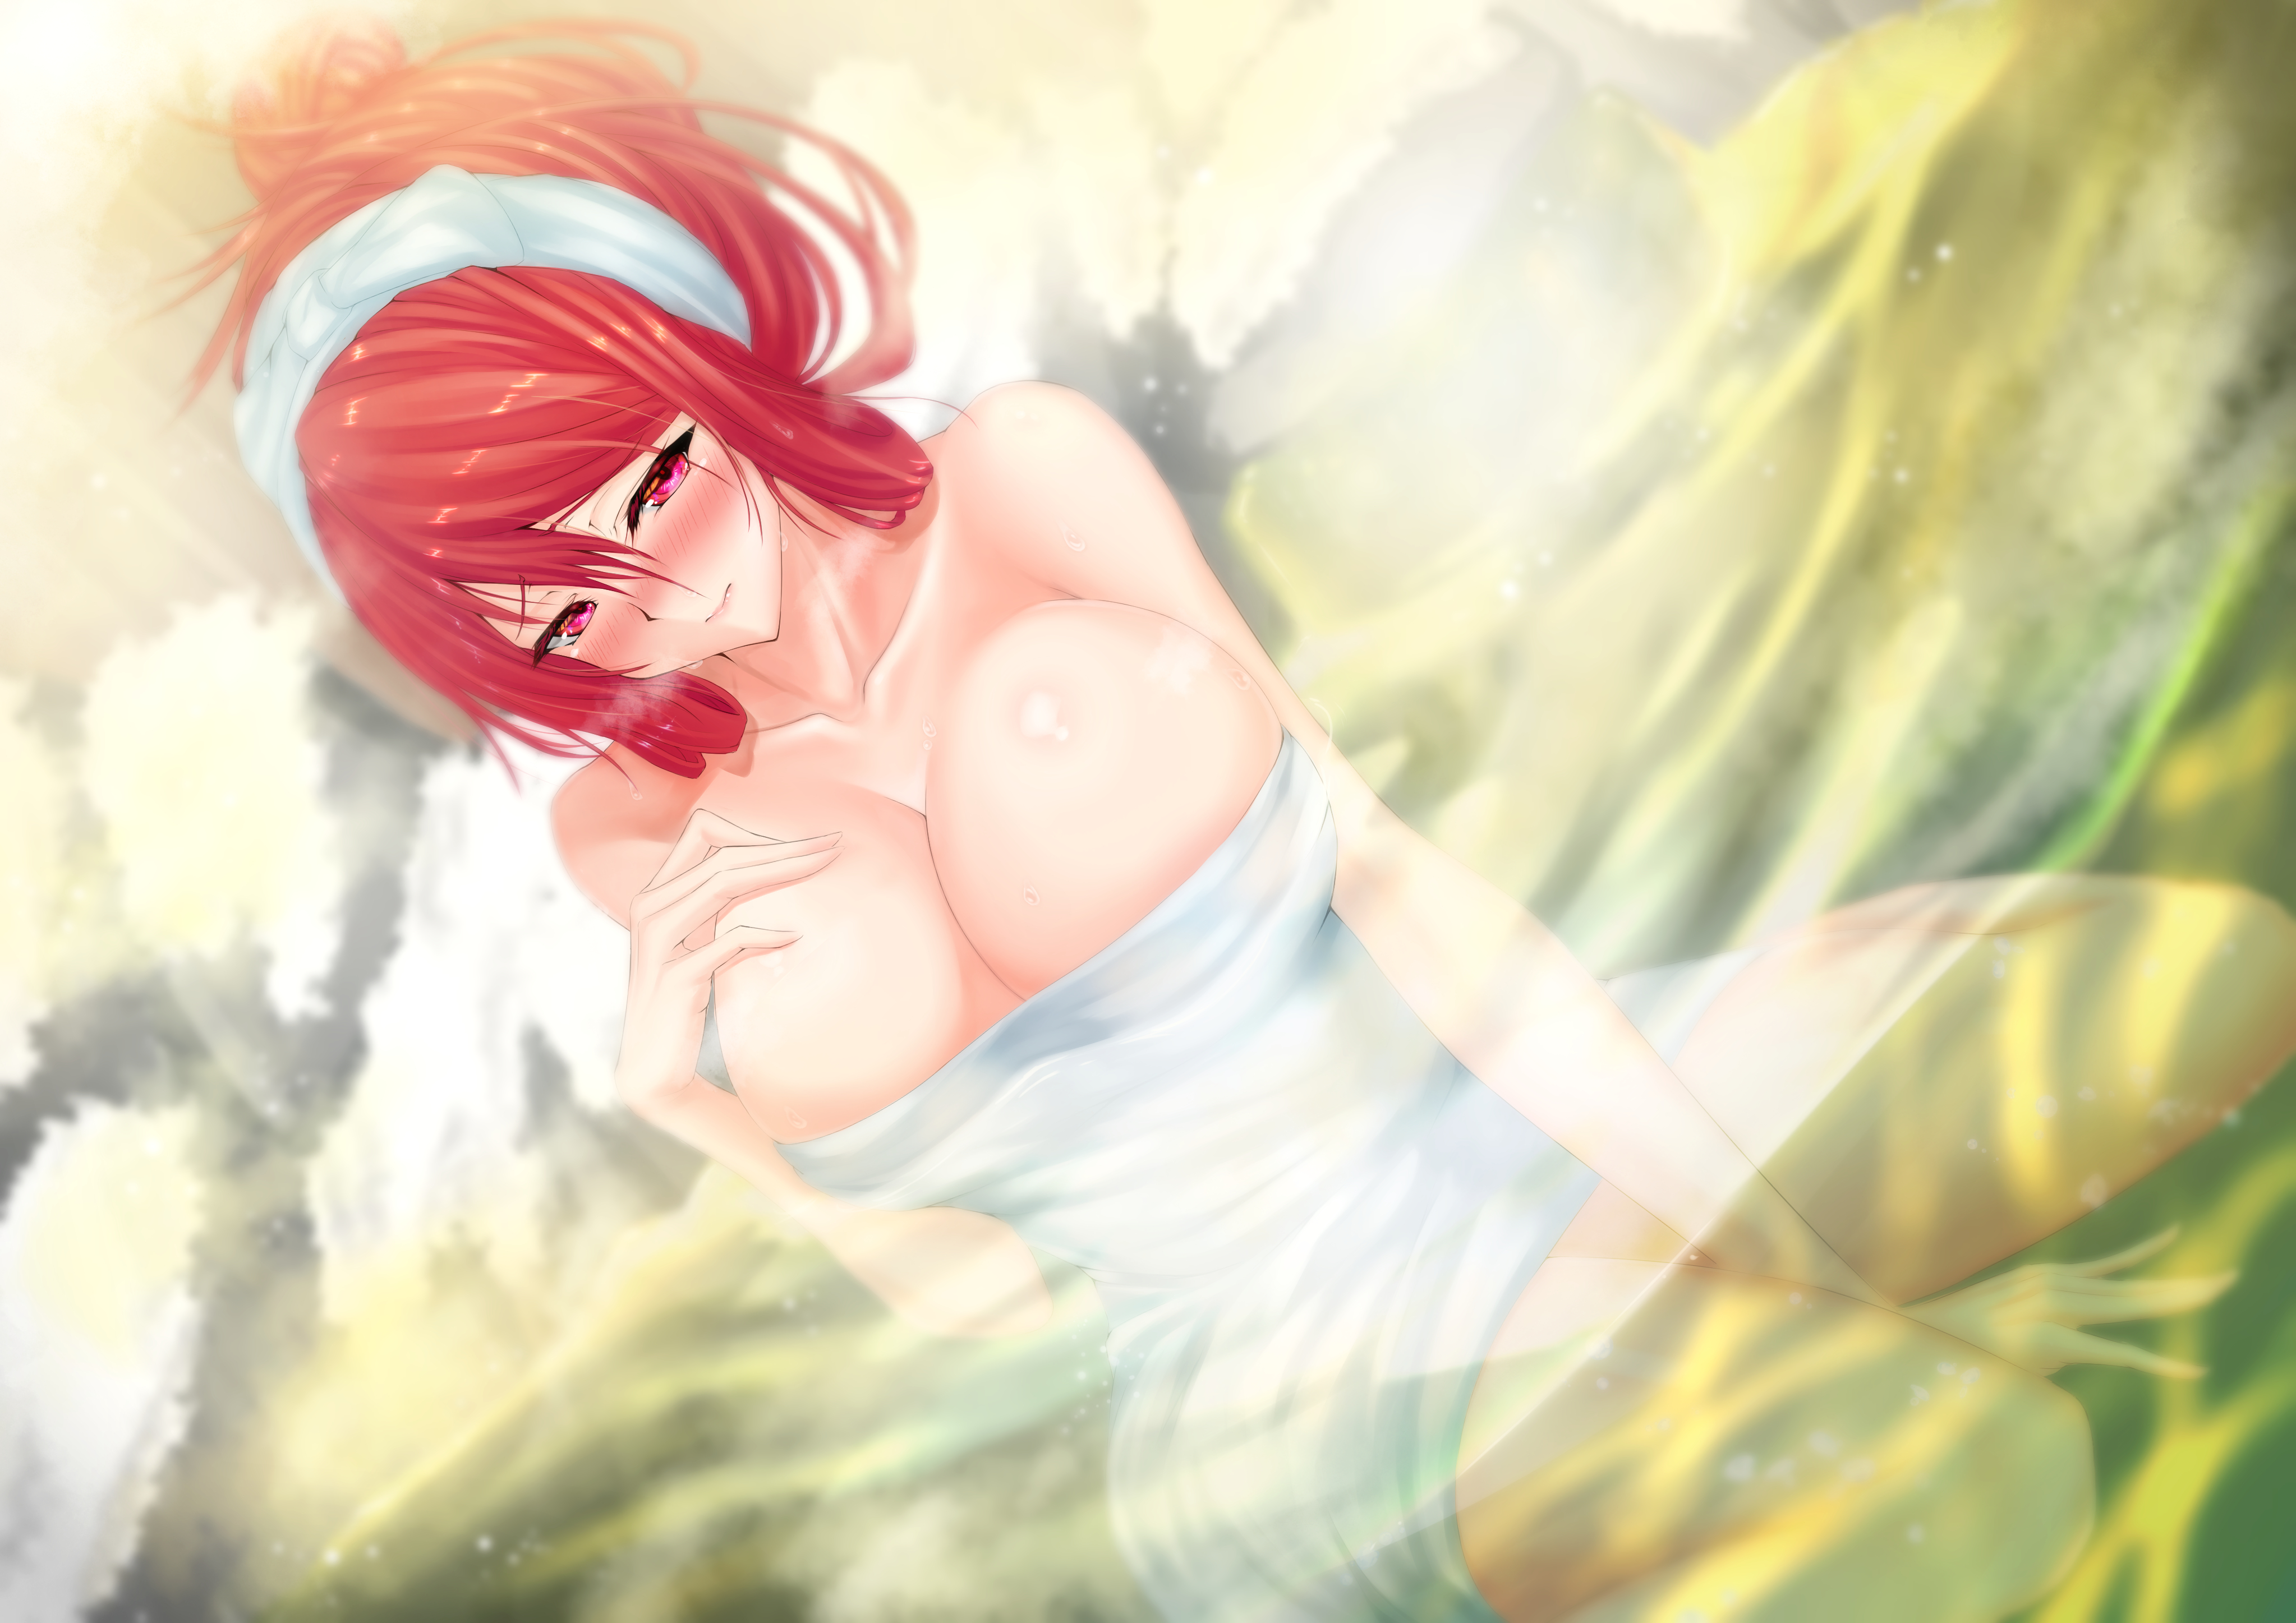 Anime 4093x2894 kaoru1307 anime anime girls water hot spring towel redhead red eyes blushing cleavage big boobs bathing sitting